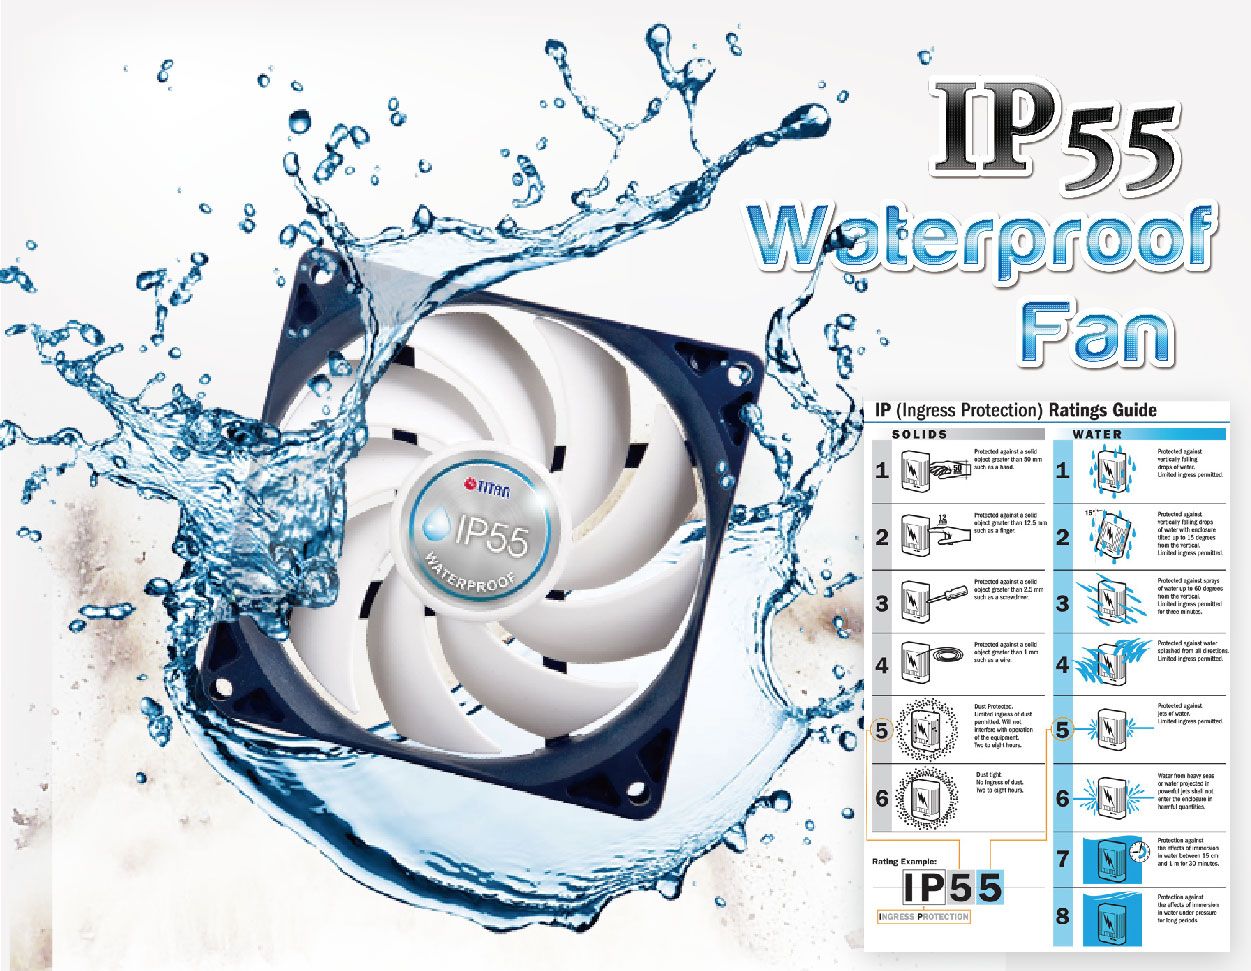 IP55 waterdichte ventilator is het cruciale kenmerk van een RV-ventilator